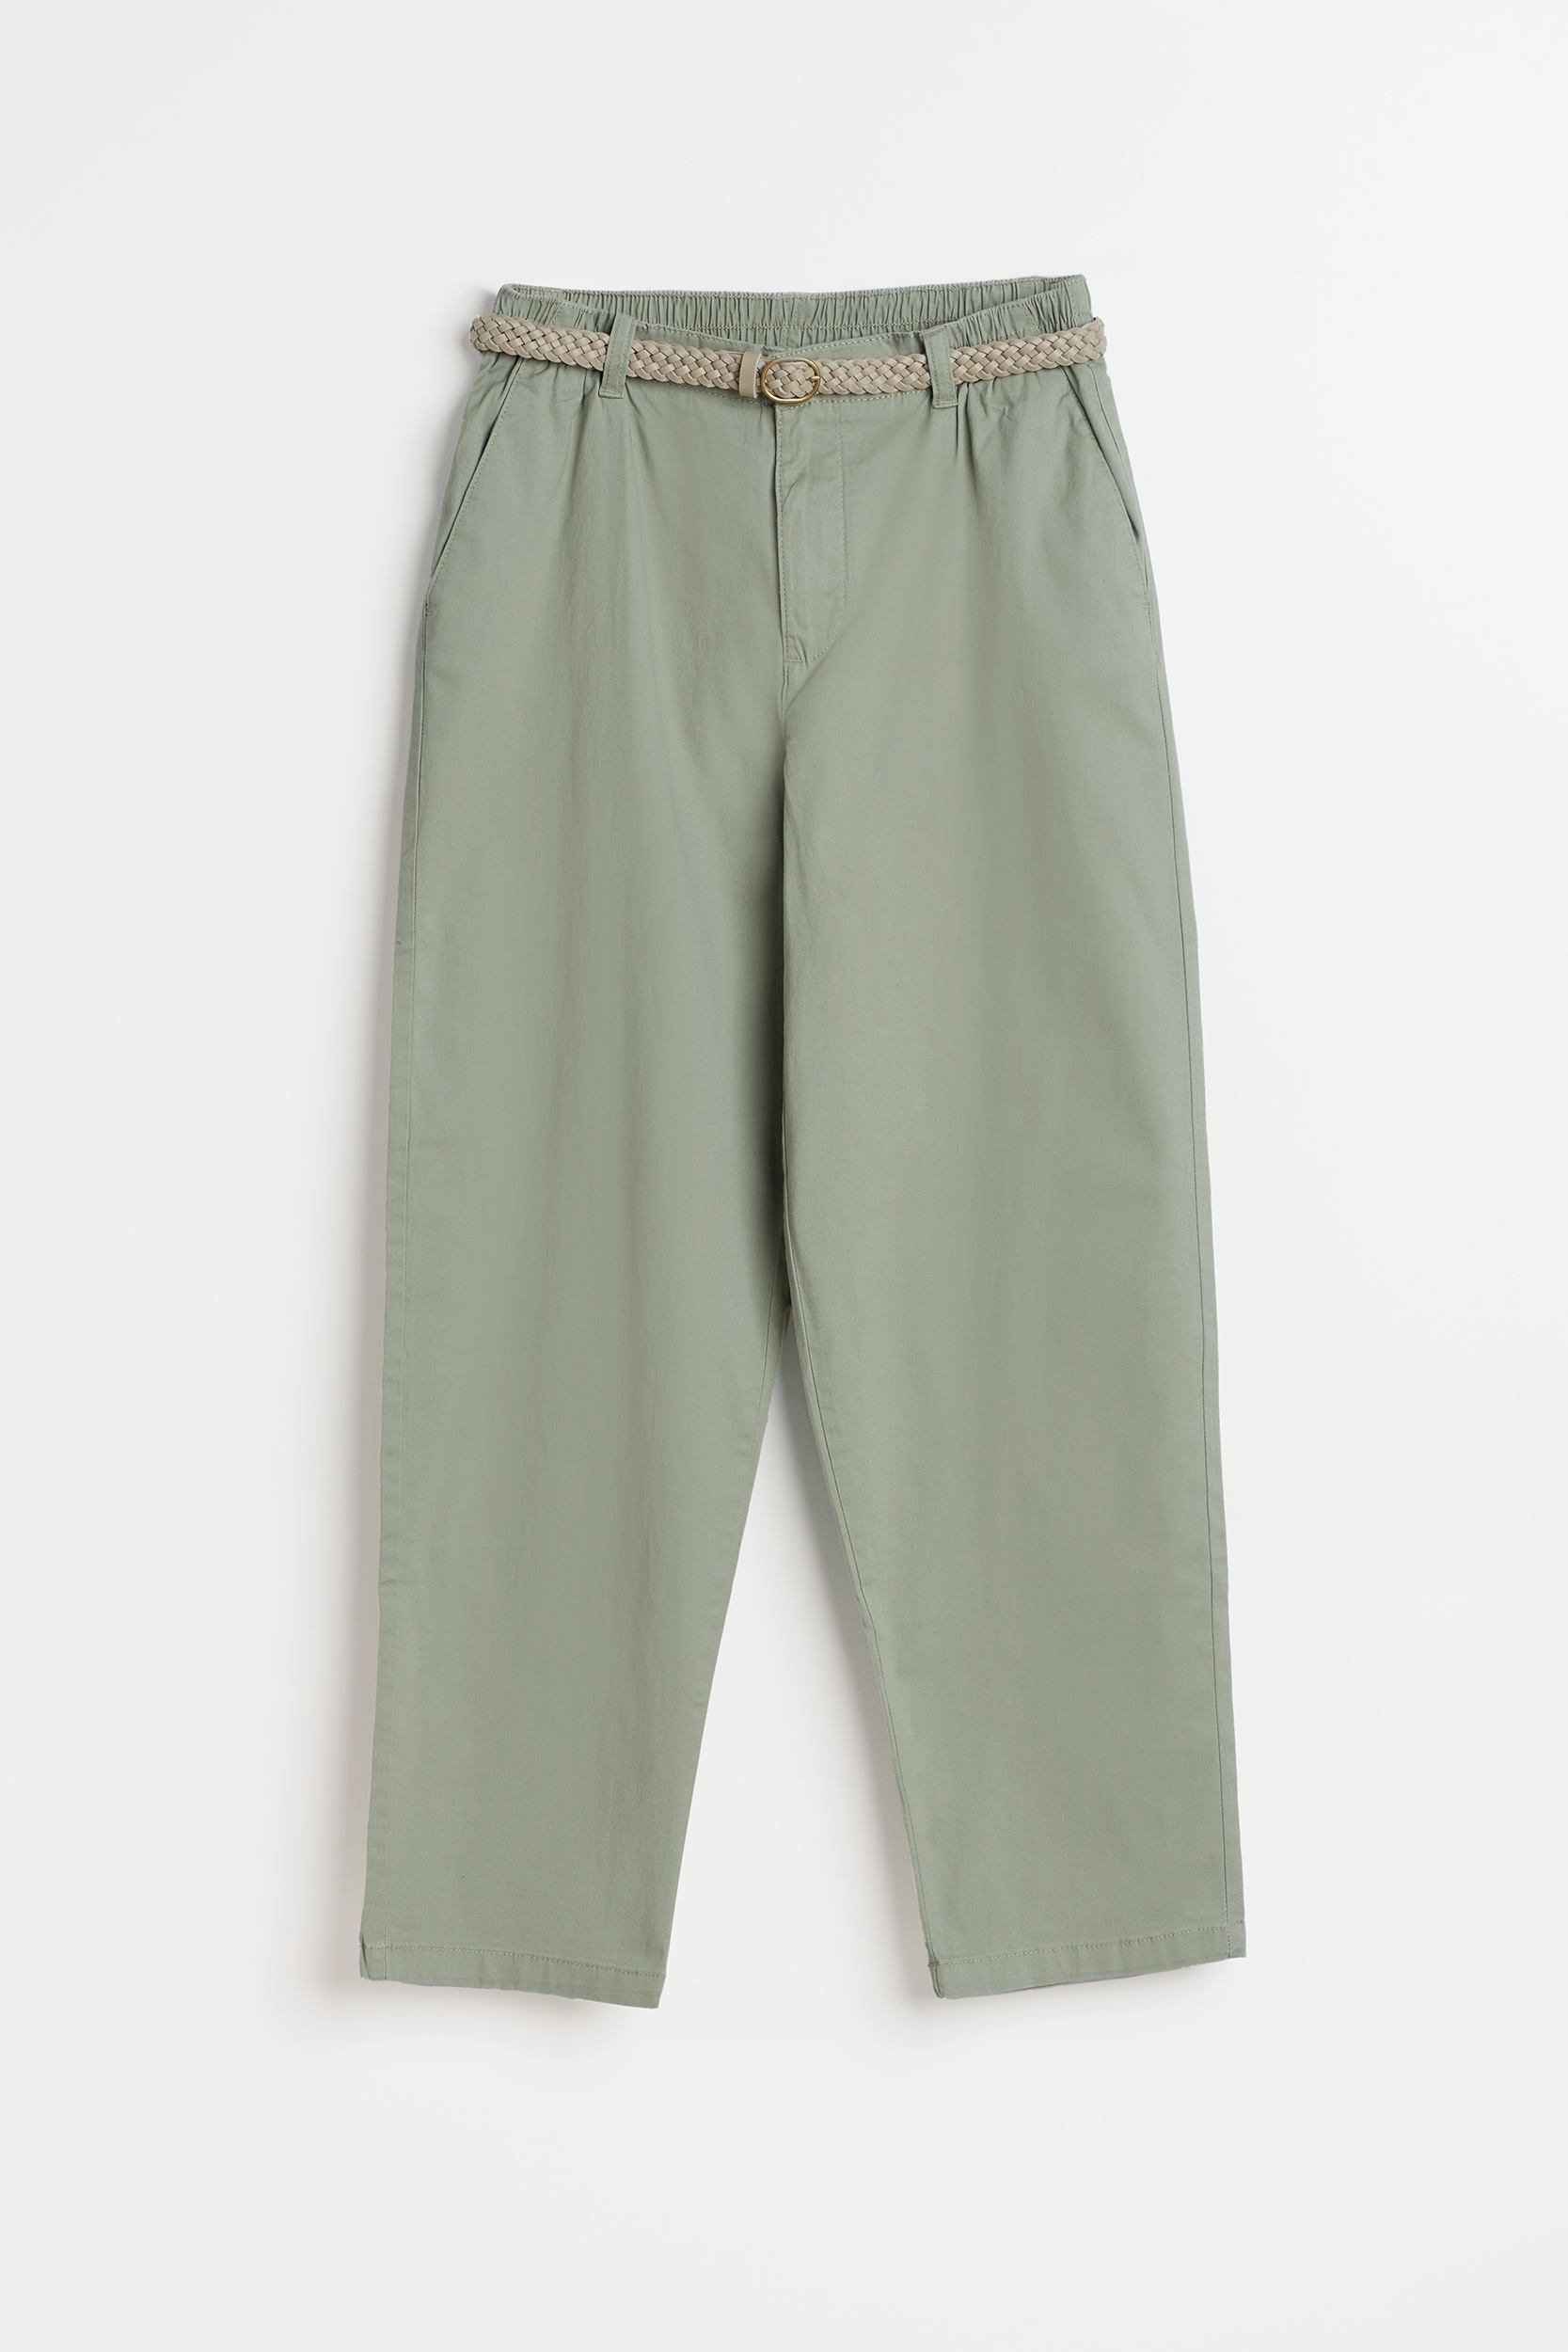 Spodnie w oliwkowym kolorze